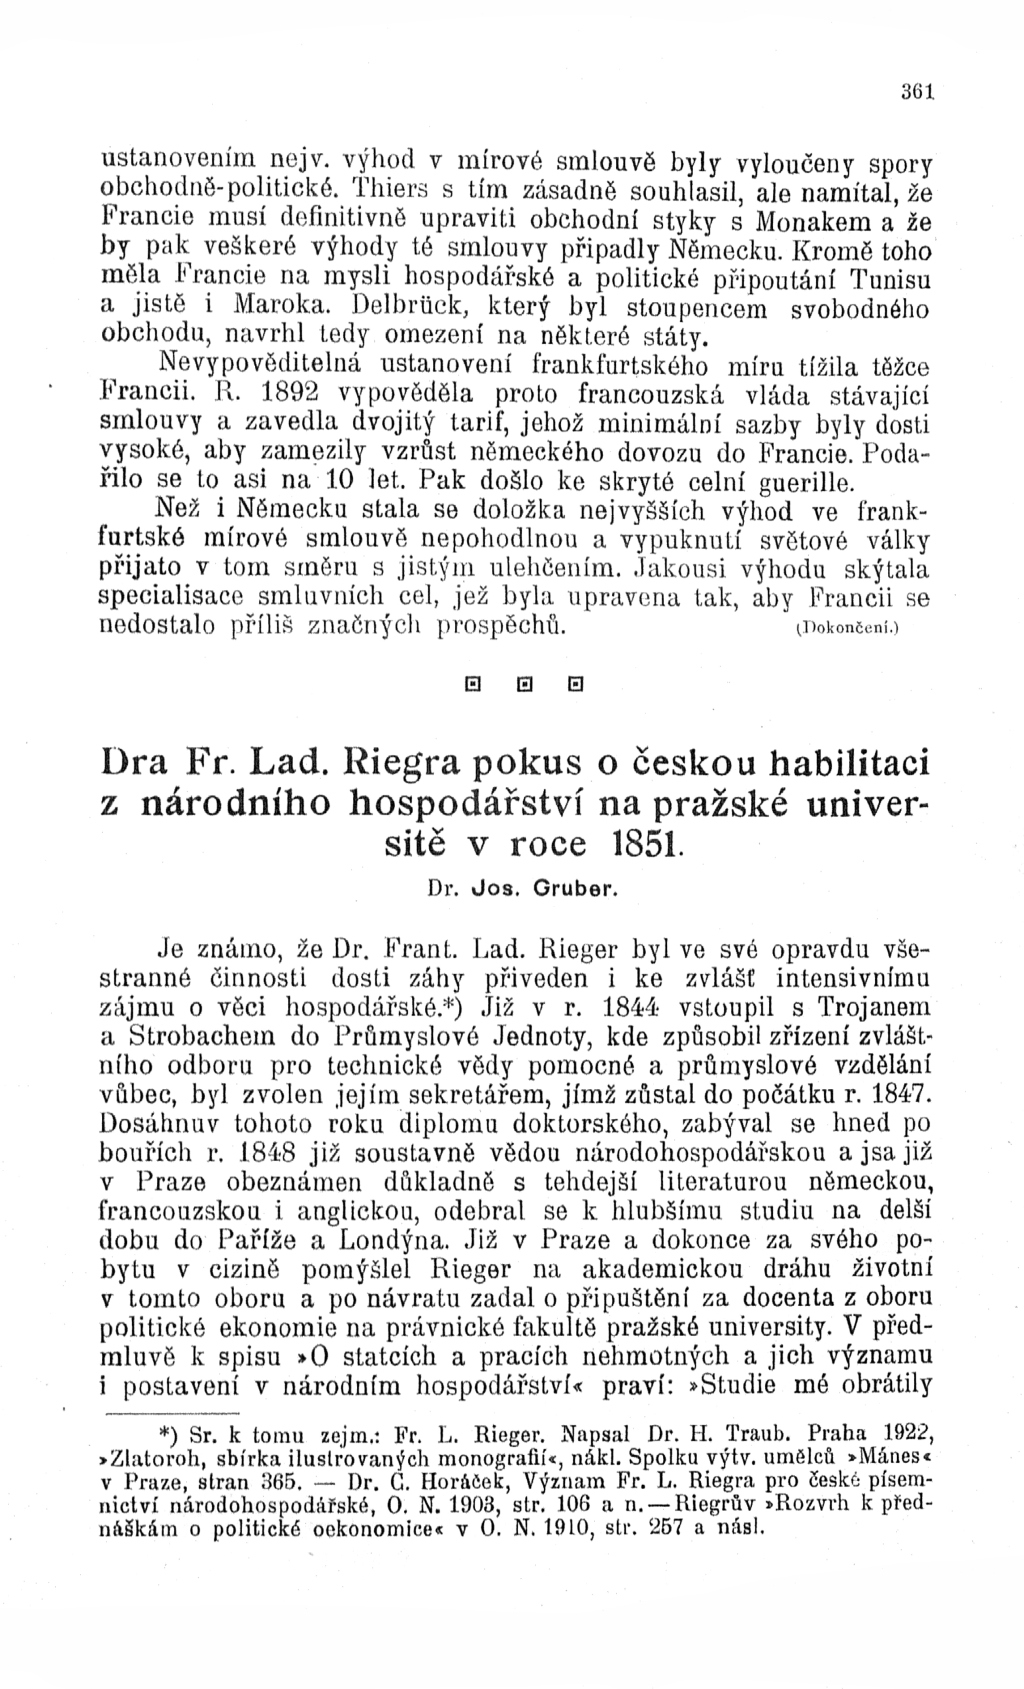 Dra. F.L. Riegra pokus o českou habilitaci z národního hospodářství na pražské universitě v roce 1851